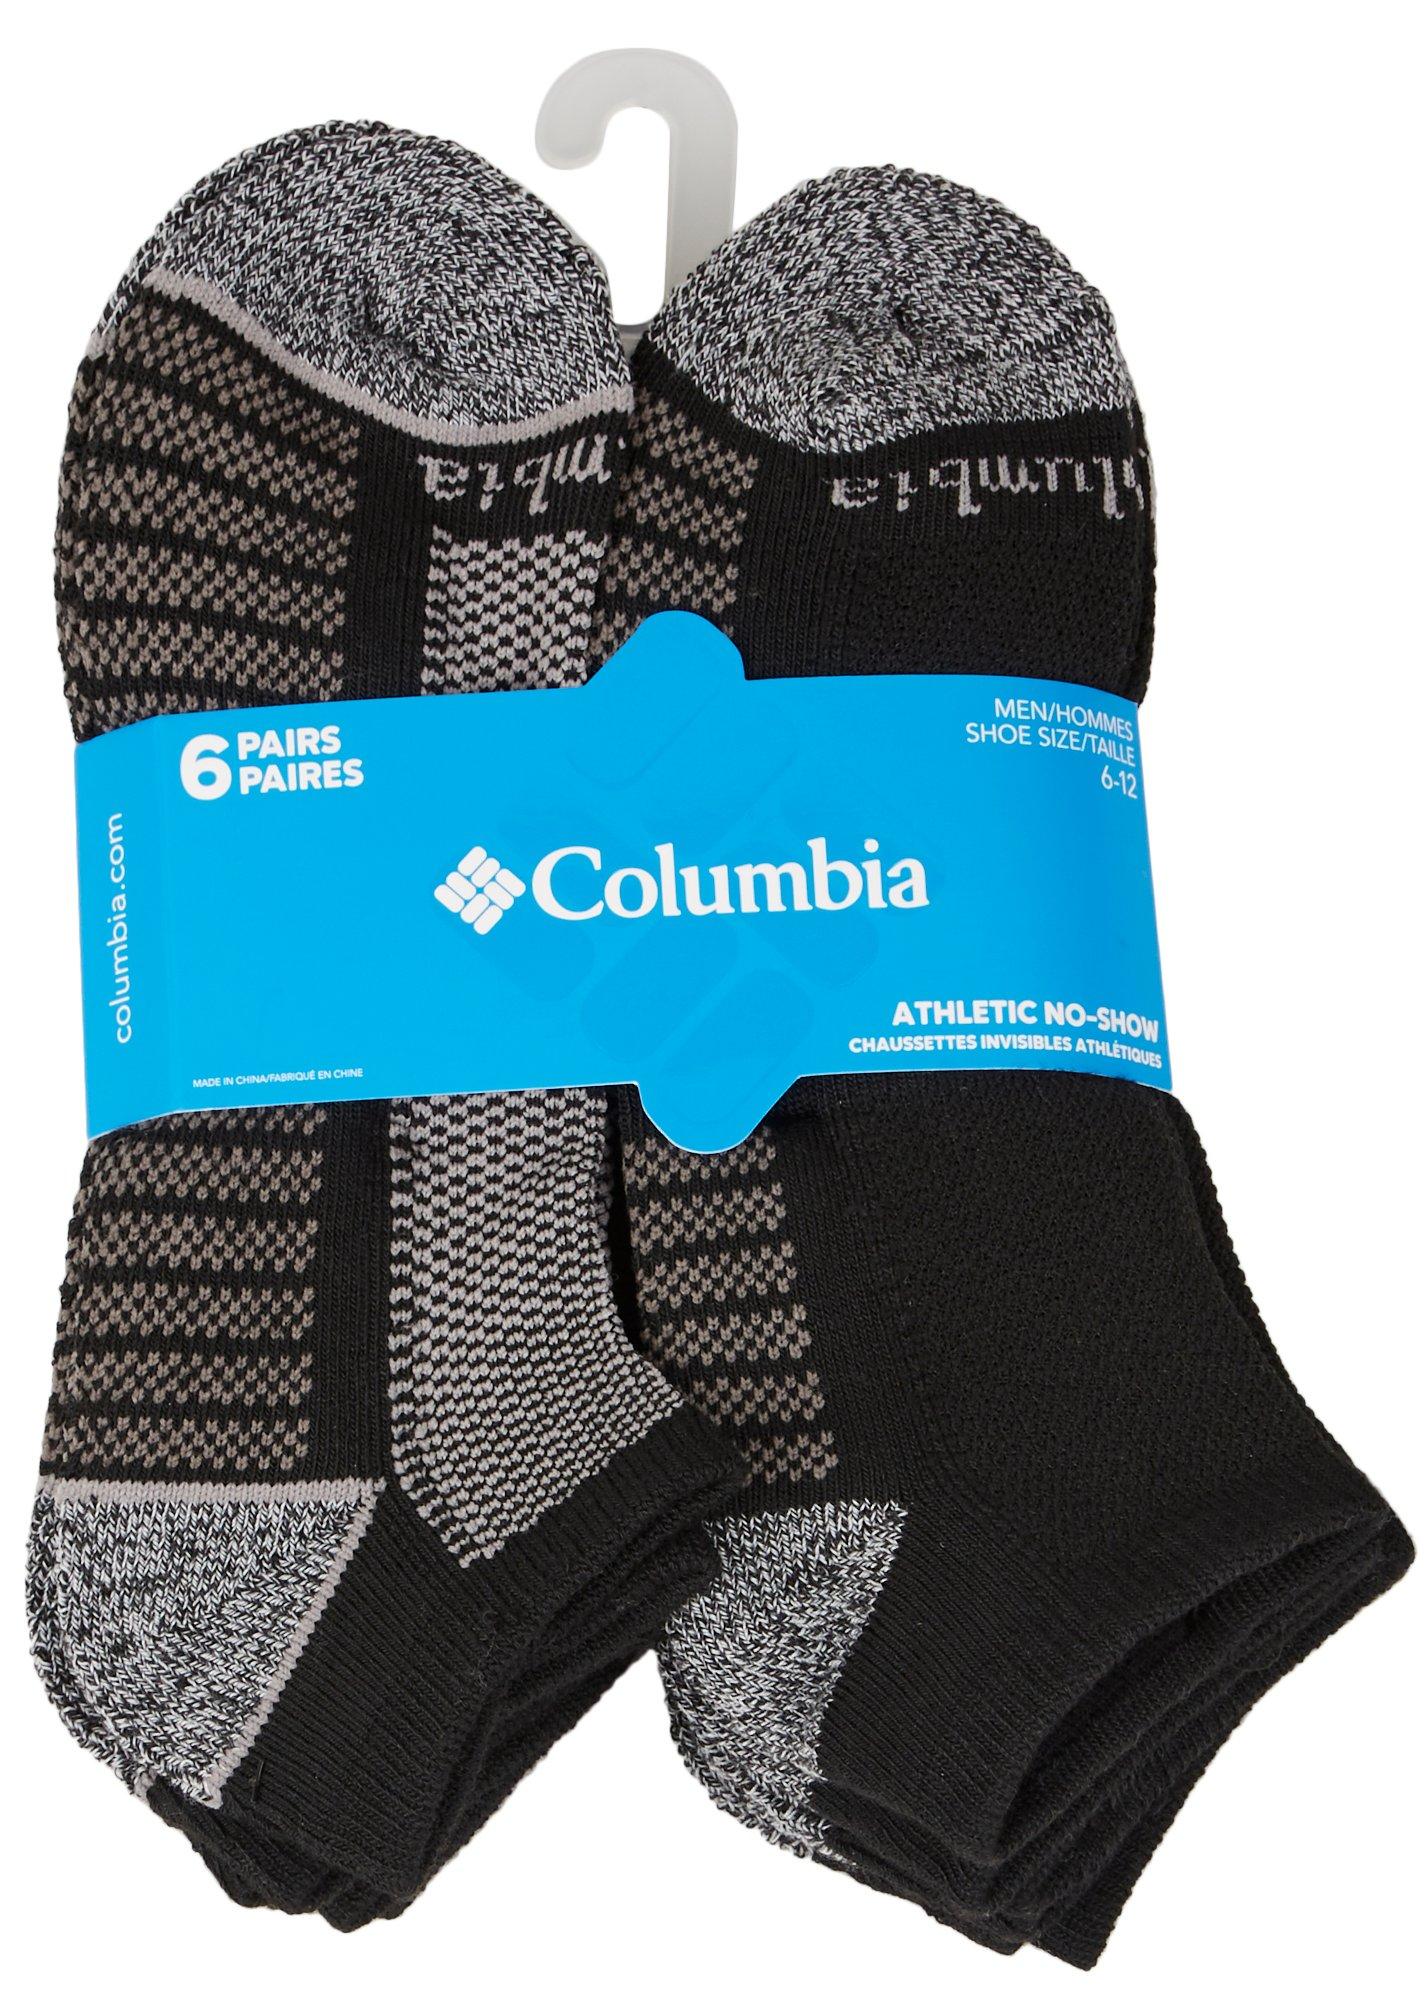 Columbia Mens 6-pk. Fashion No Show Black/Grey Socks